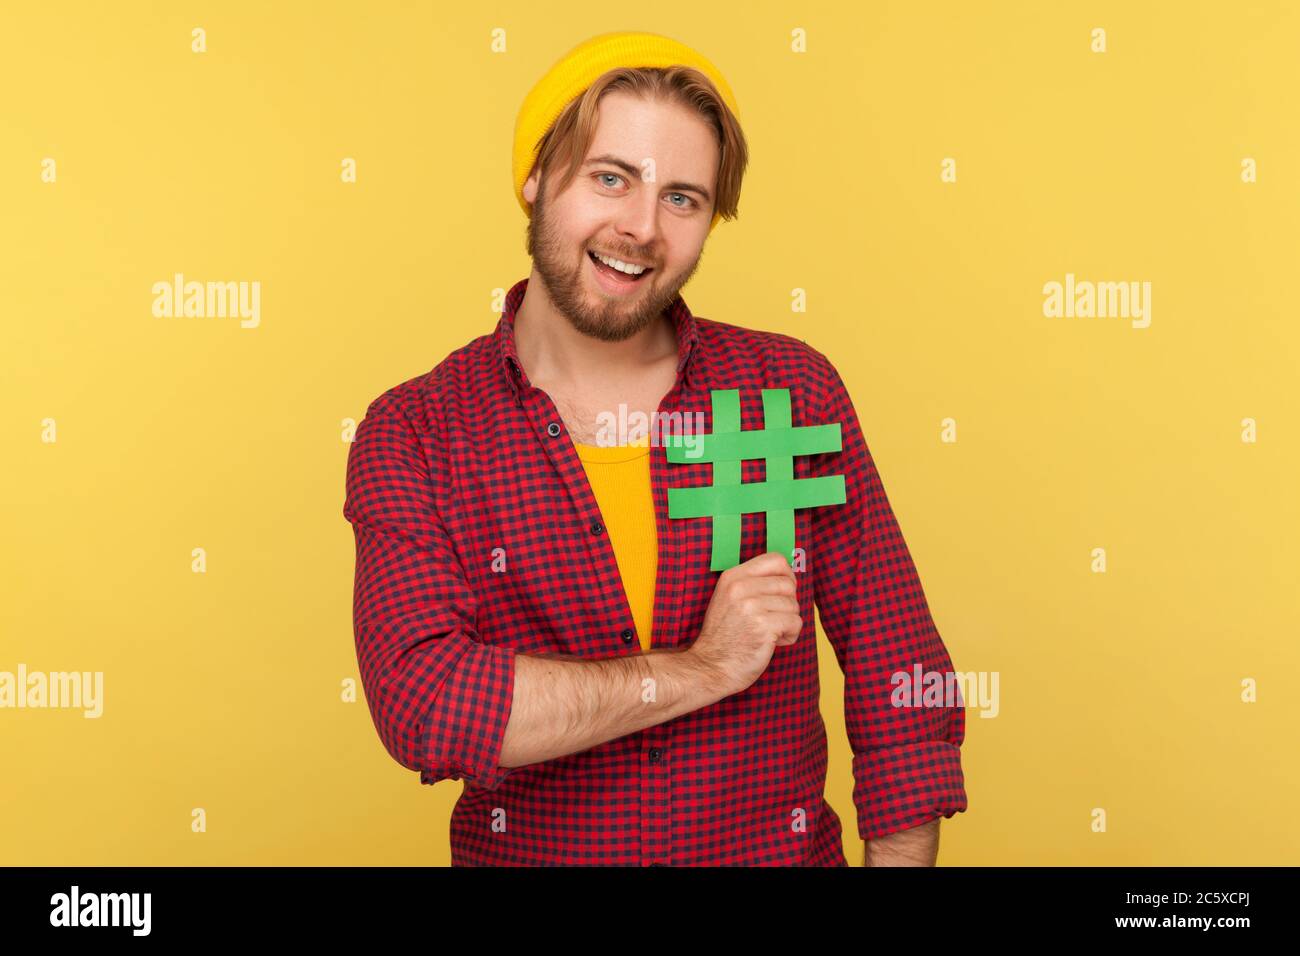 Hashtag, tendances Internet. Positif hipster gars dans la chemise à carreaux souriant et tenant le signe de hash sur sa poitrine, symbole du réseau social de message viral. Banque D'Images